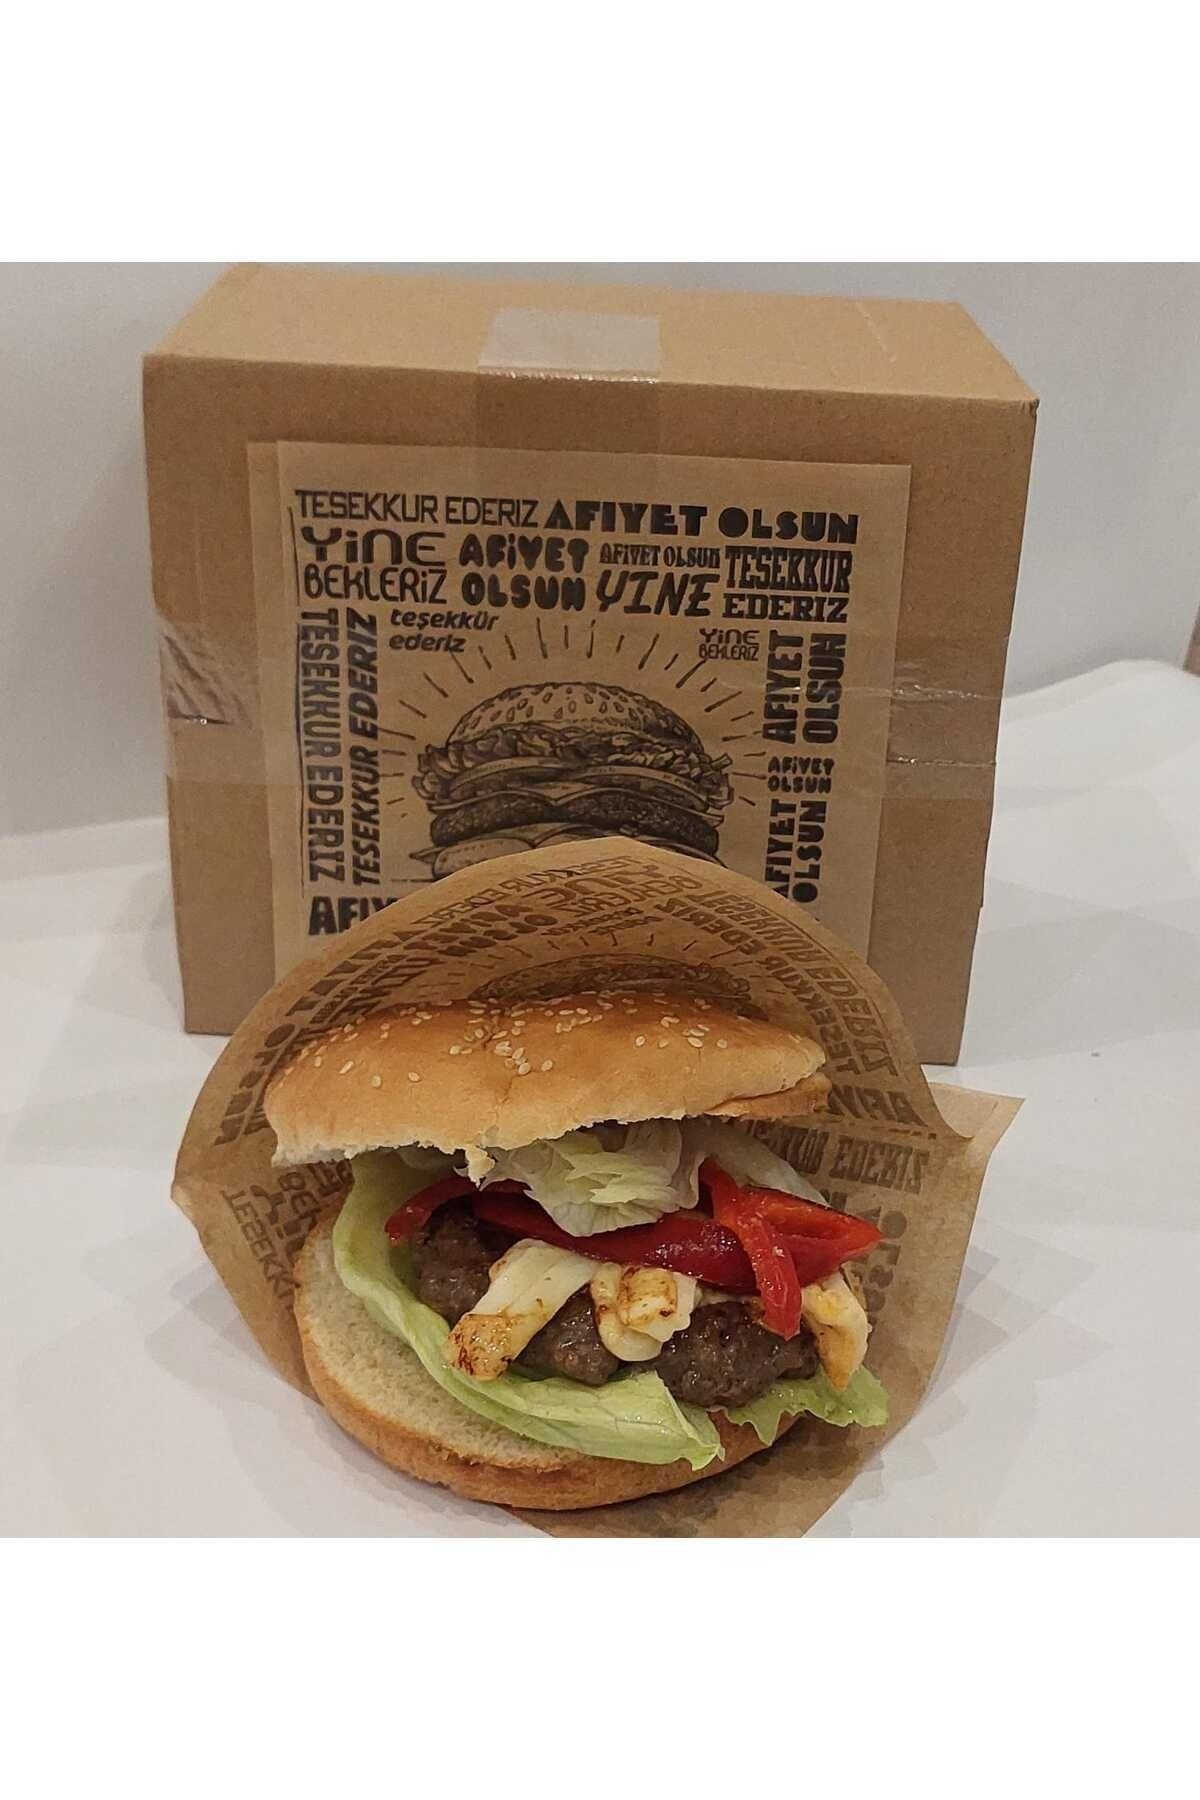 ambalajtoptancısı Ithal Şamua Hamburger Kağıdı 15.5 X 15 Cm 1.000 Adetli